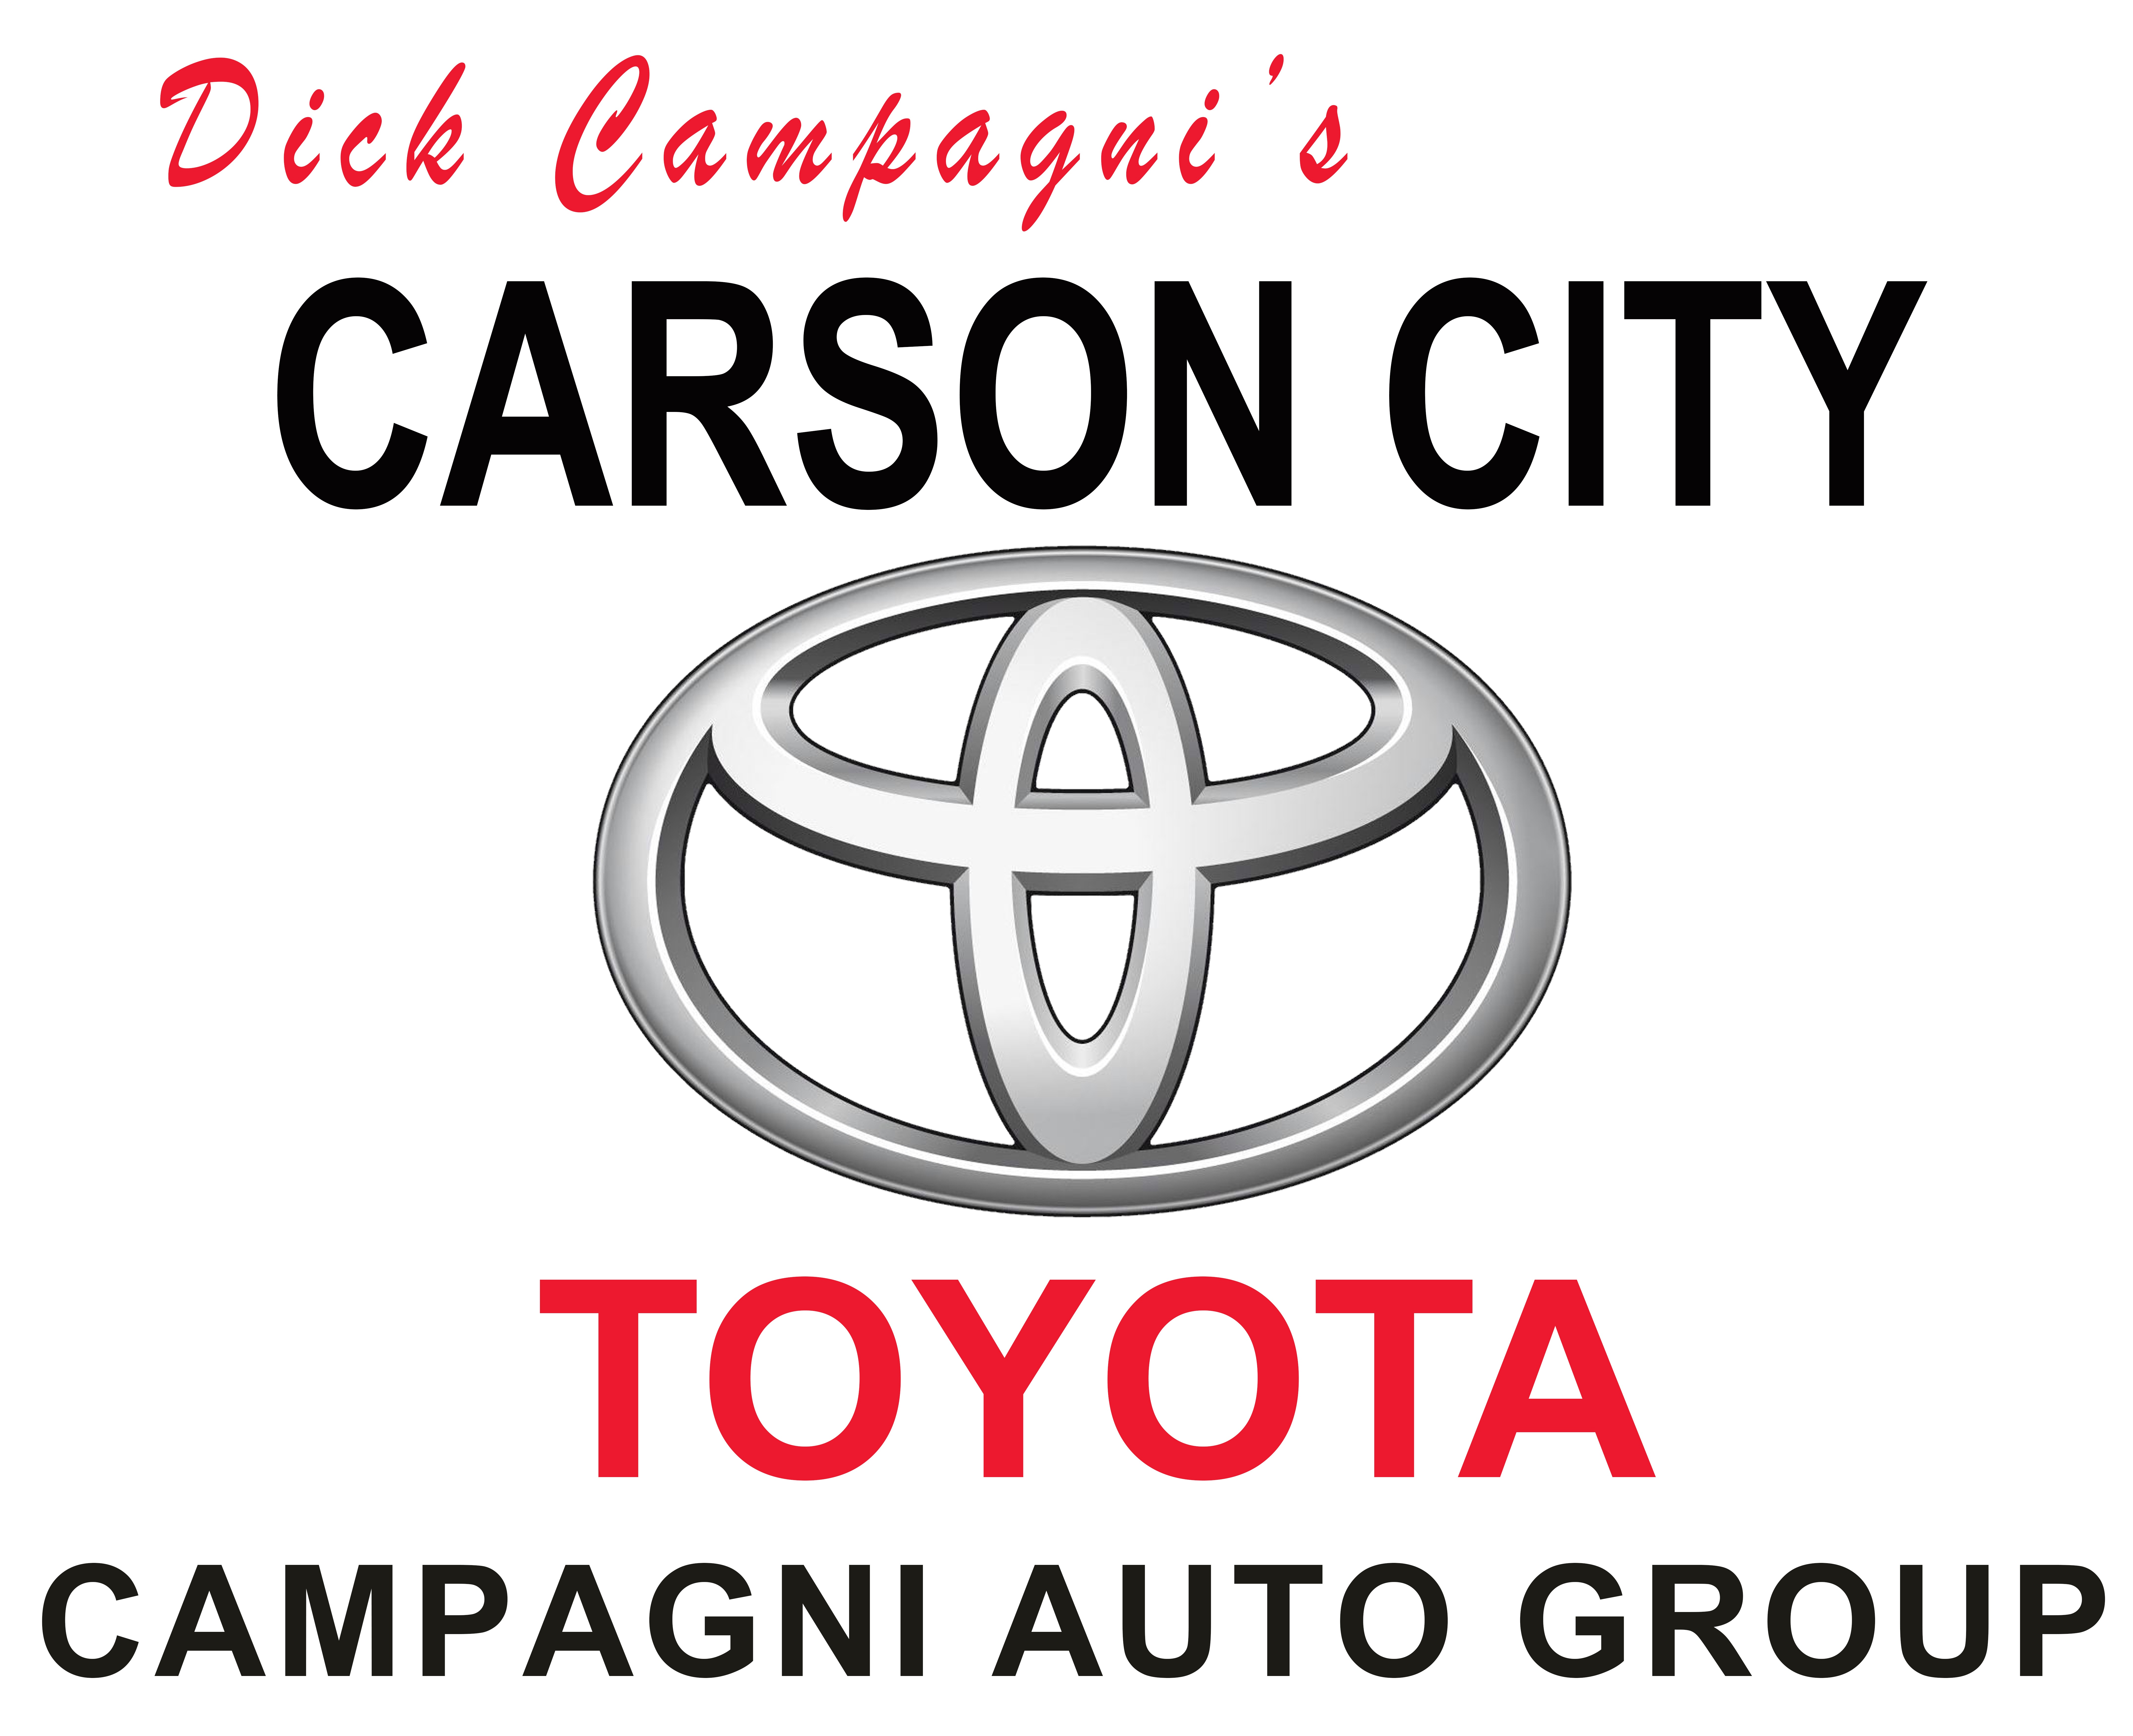 Dick Campagni Carson City Toyota